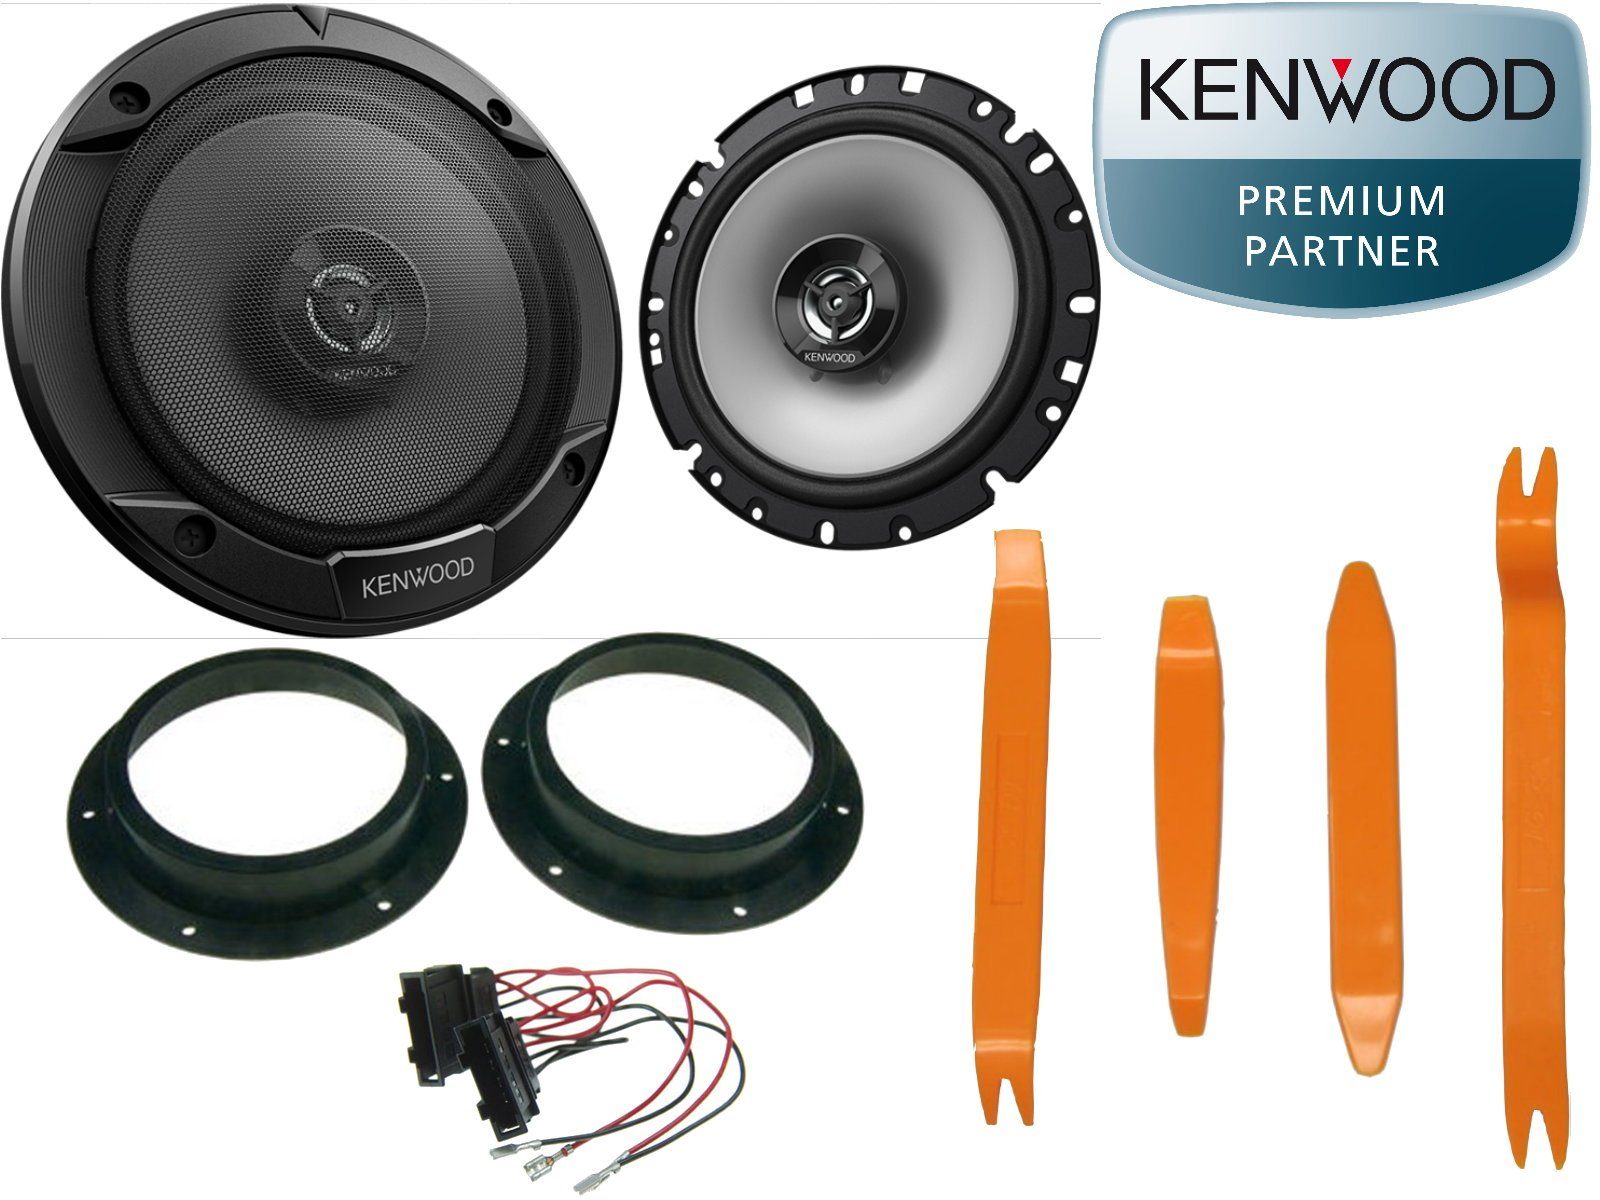 DSX Kenwood passend für VW Golf V 5 Set Tür 300 Watt + Ausbau Hebel Auto-Lautsprecher